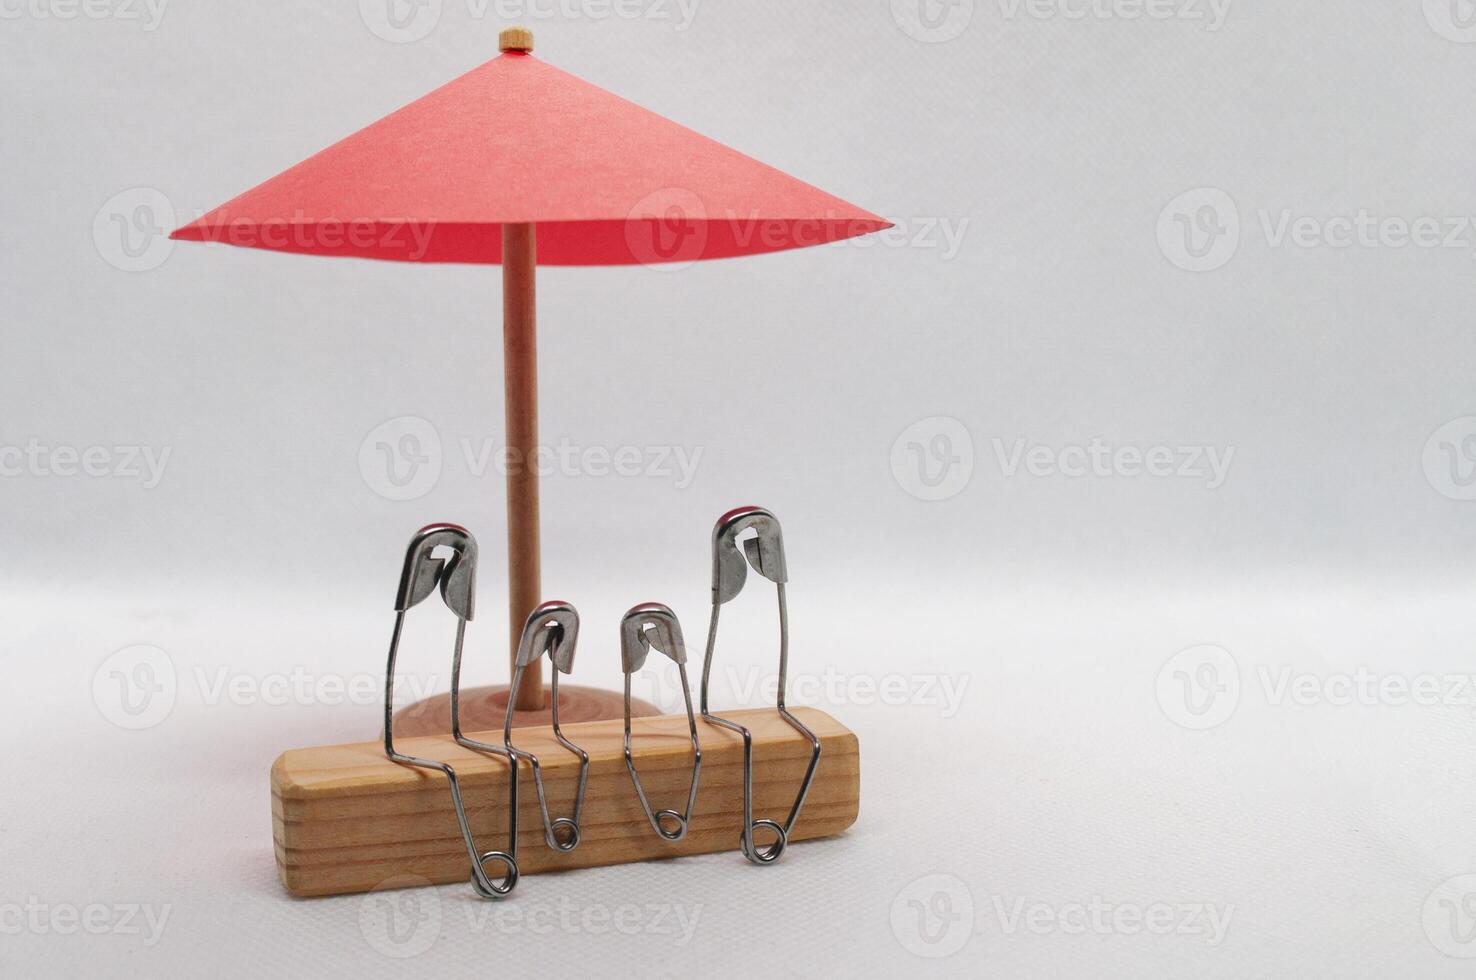 modell säkerhet stift av familj Sammanträde på trä- blockera med röd paraply bakgrund. familj försäkring begrepp foto